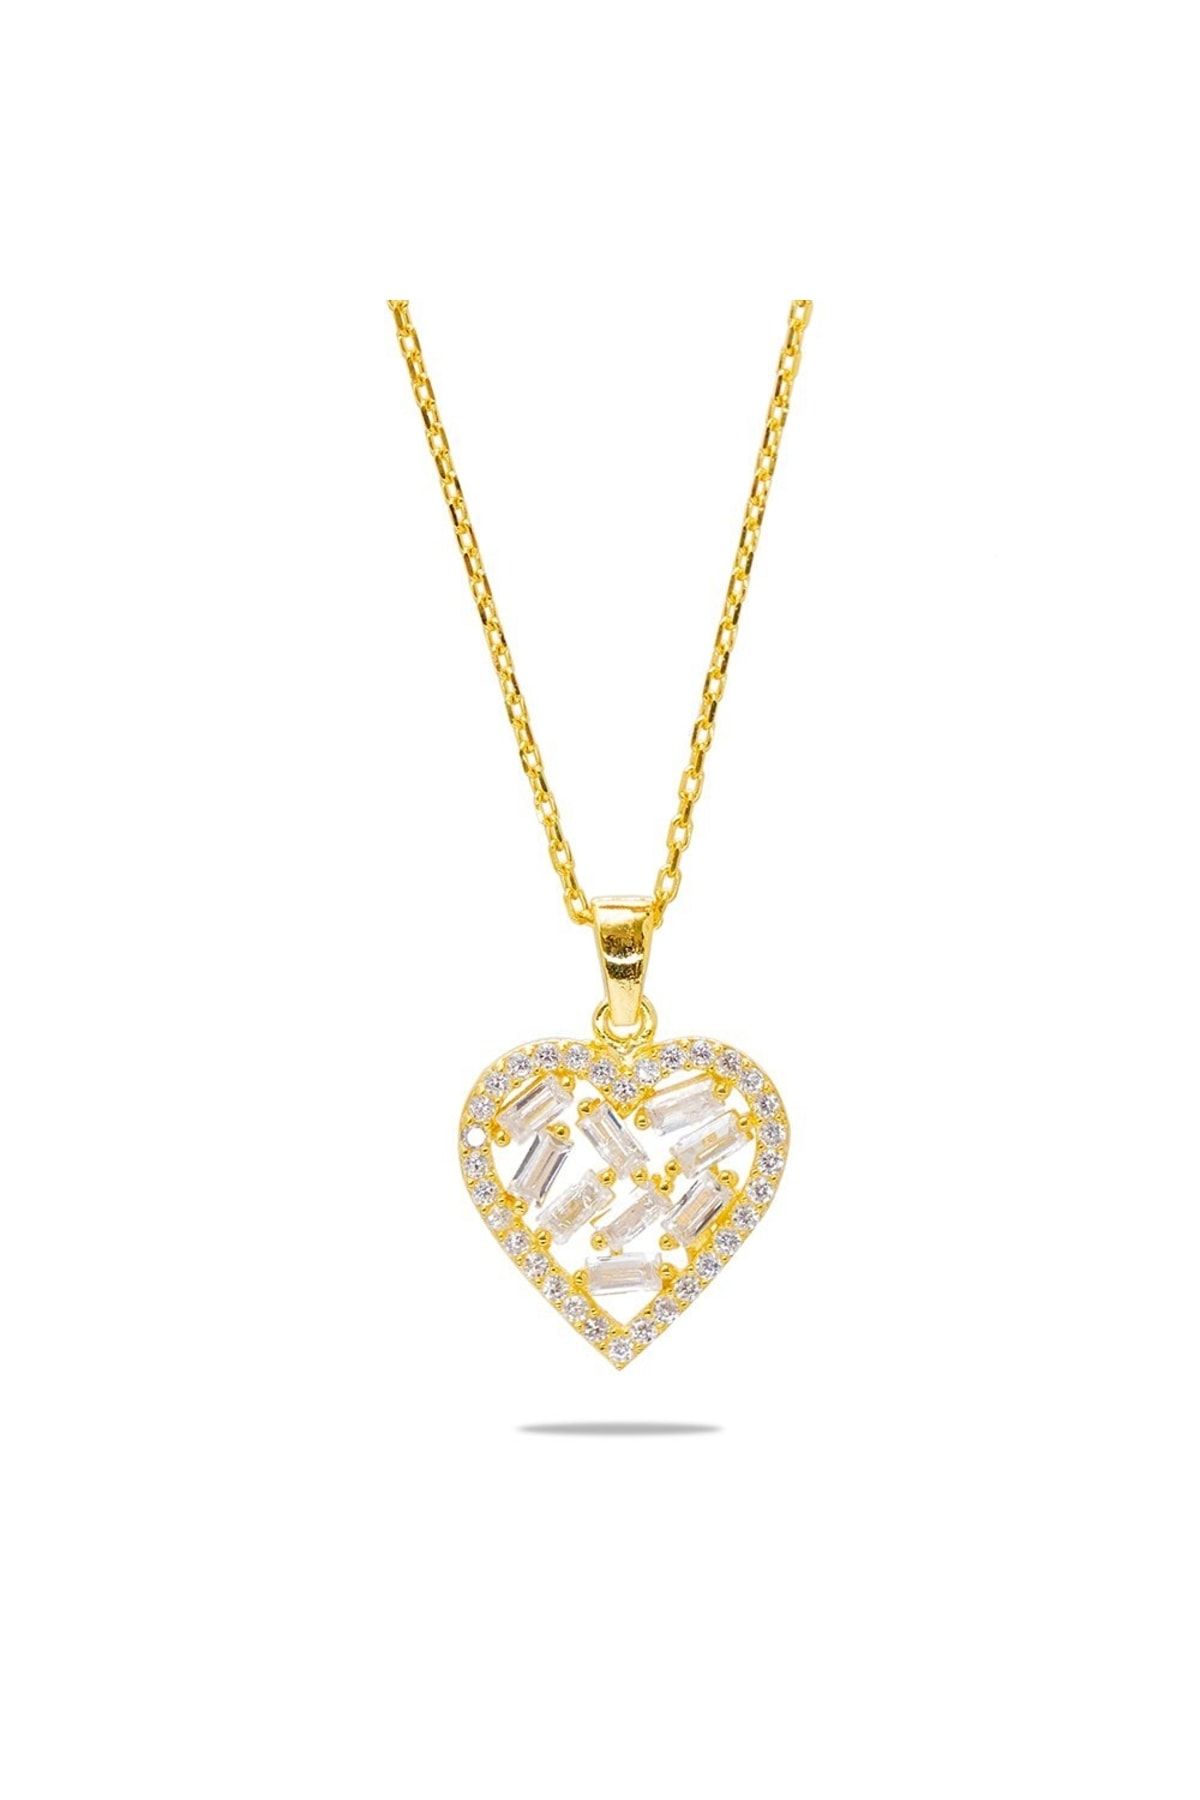 Tesbihane Beyaz Zirkon Taşlı Kalp Tasarım Gold Renk 925 Ayar Gümüş Kadın Kolye